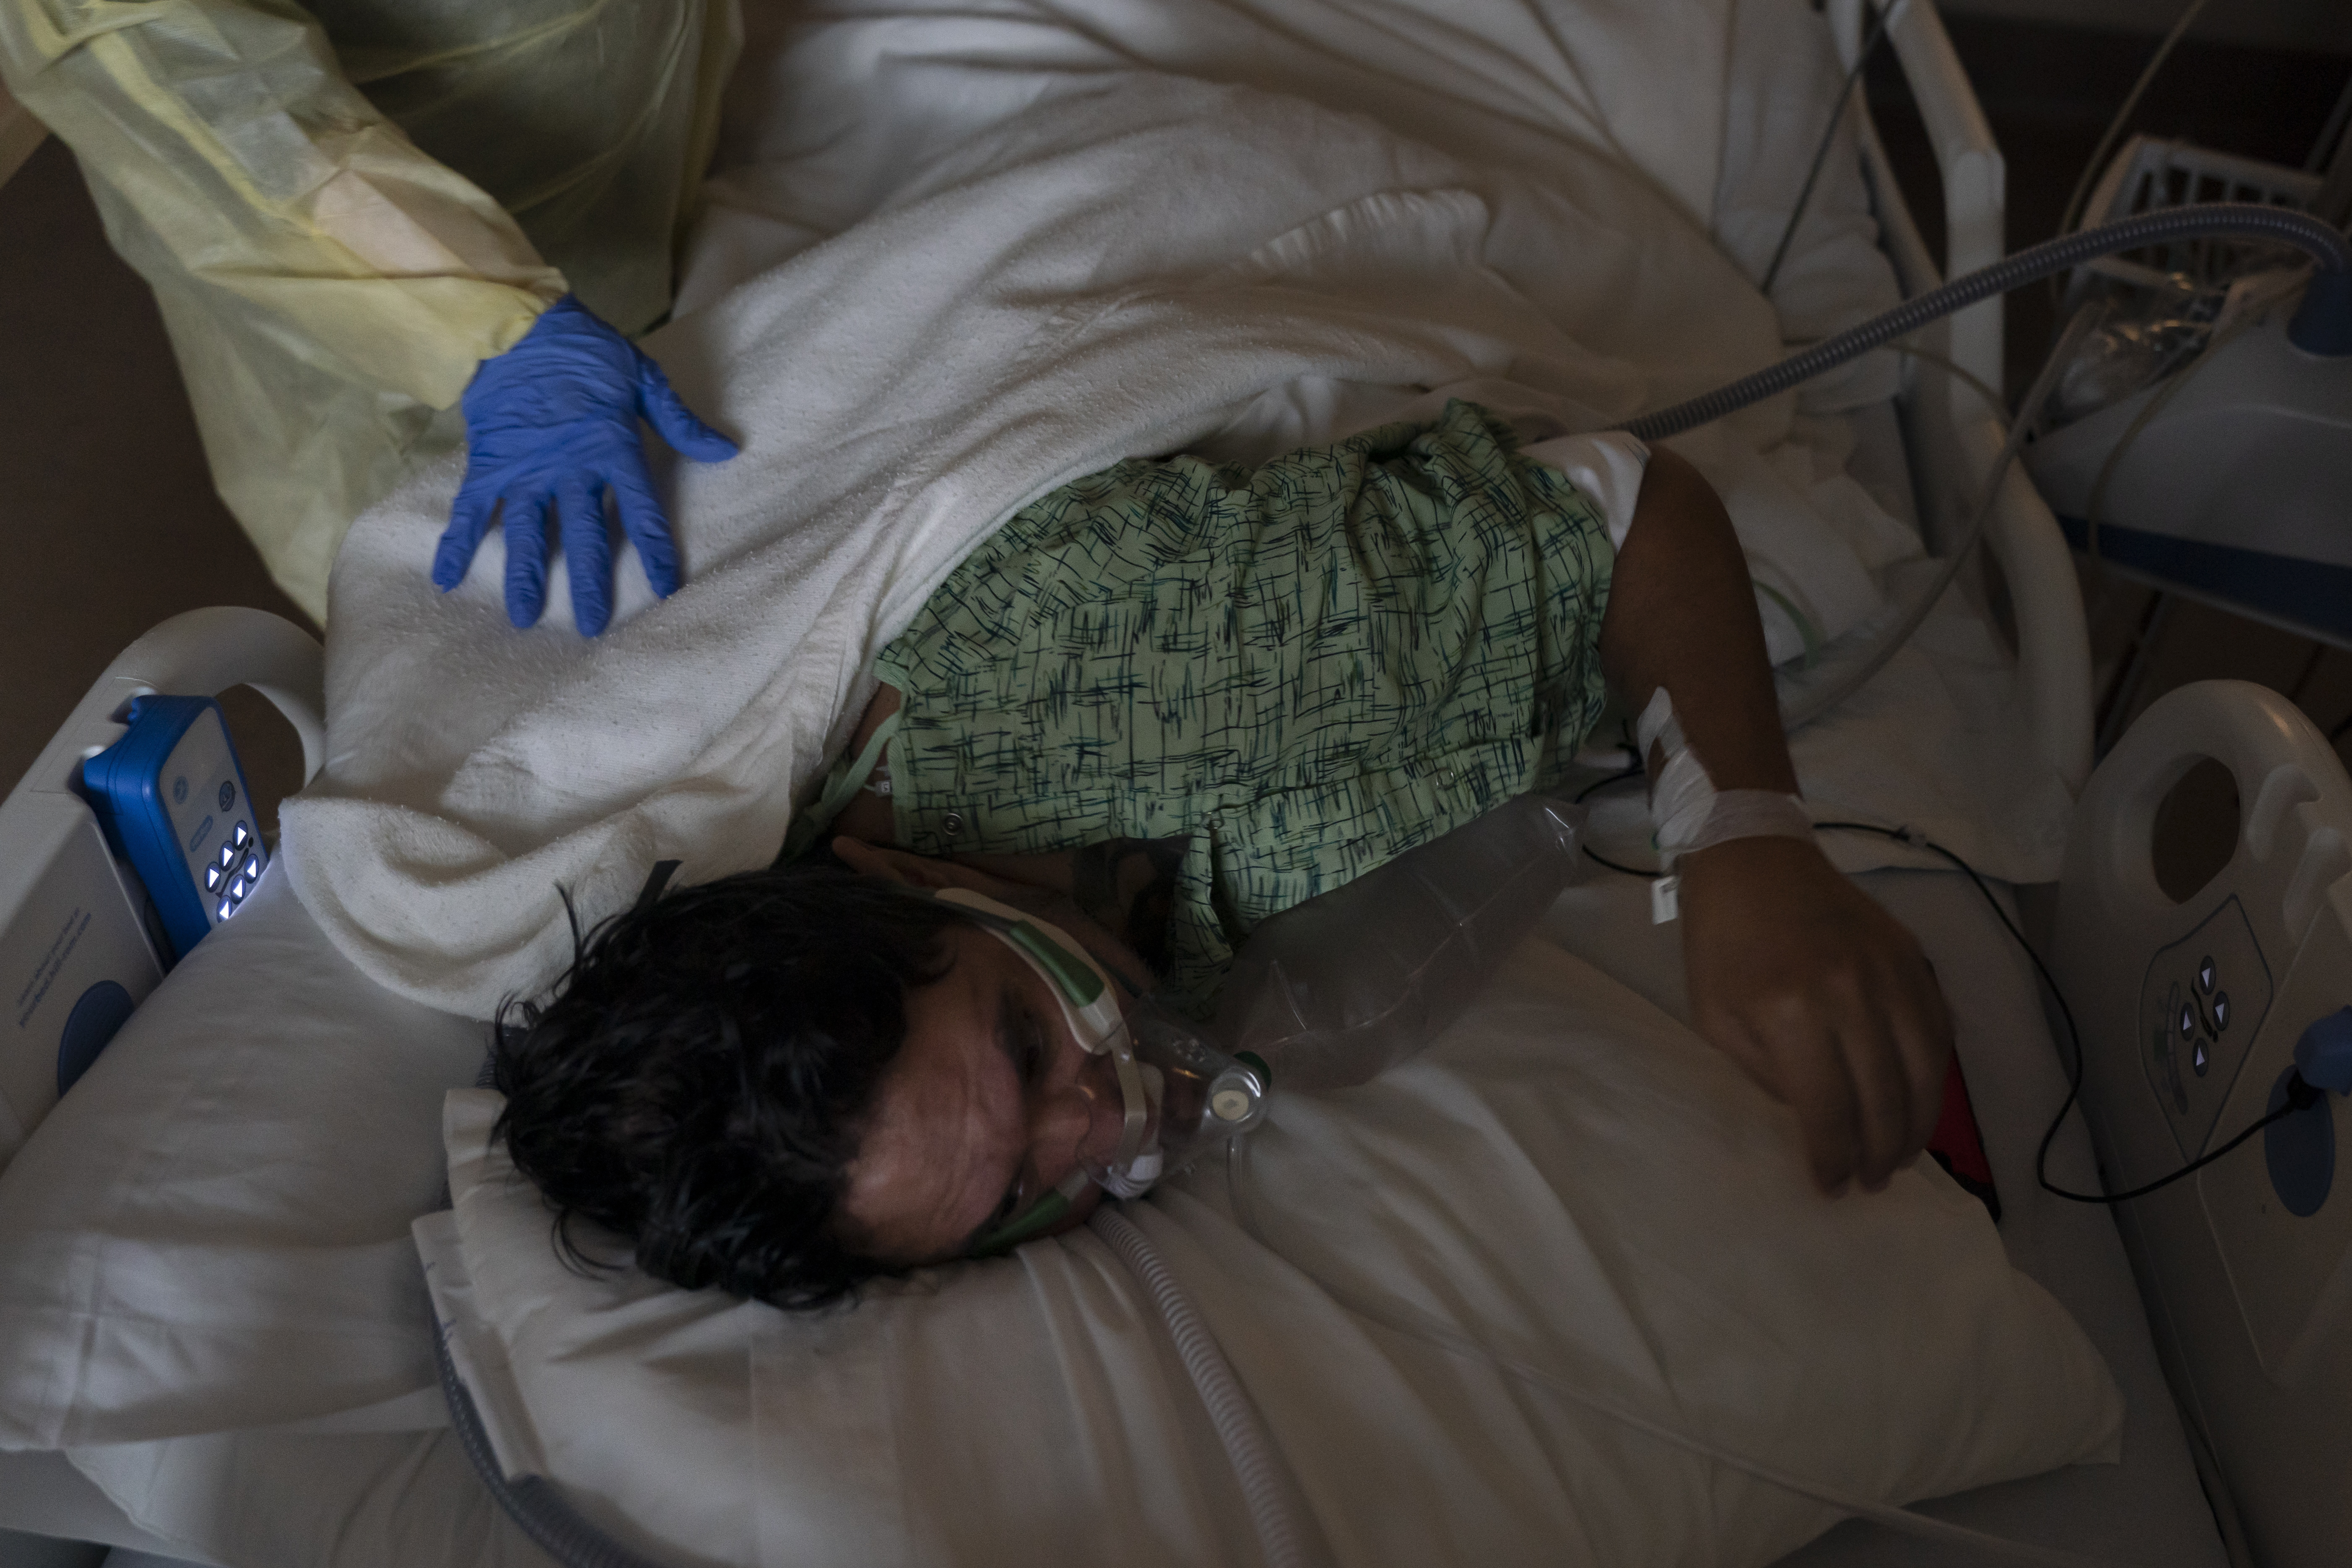 ARCHIVO - El enfermero registrado Nvard Termendzhyan ayuda a Julio Valladares, de 46 años, a cambiar de posición mientras lo trata en una unidad de COVID-19 en el Centro Médico Providence Holy Cross en Los Ángeles, el 13 de diciembre de 2021. (Foto AP/Jae C. Hong, Archivo )